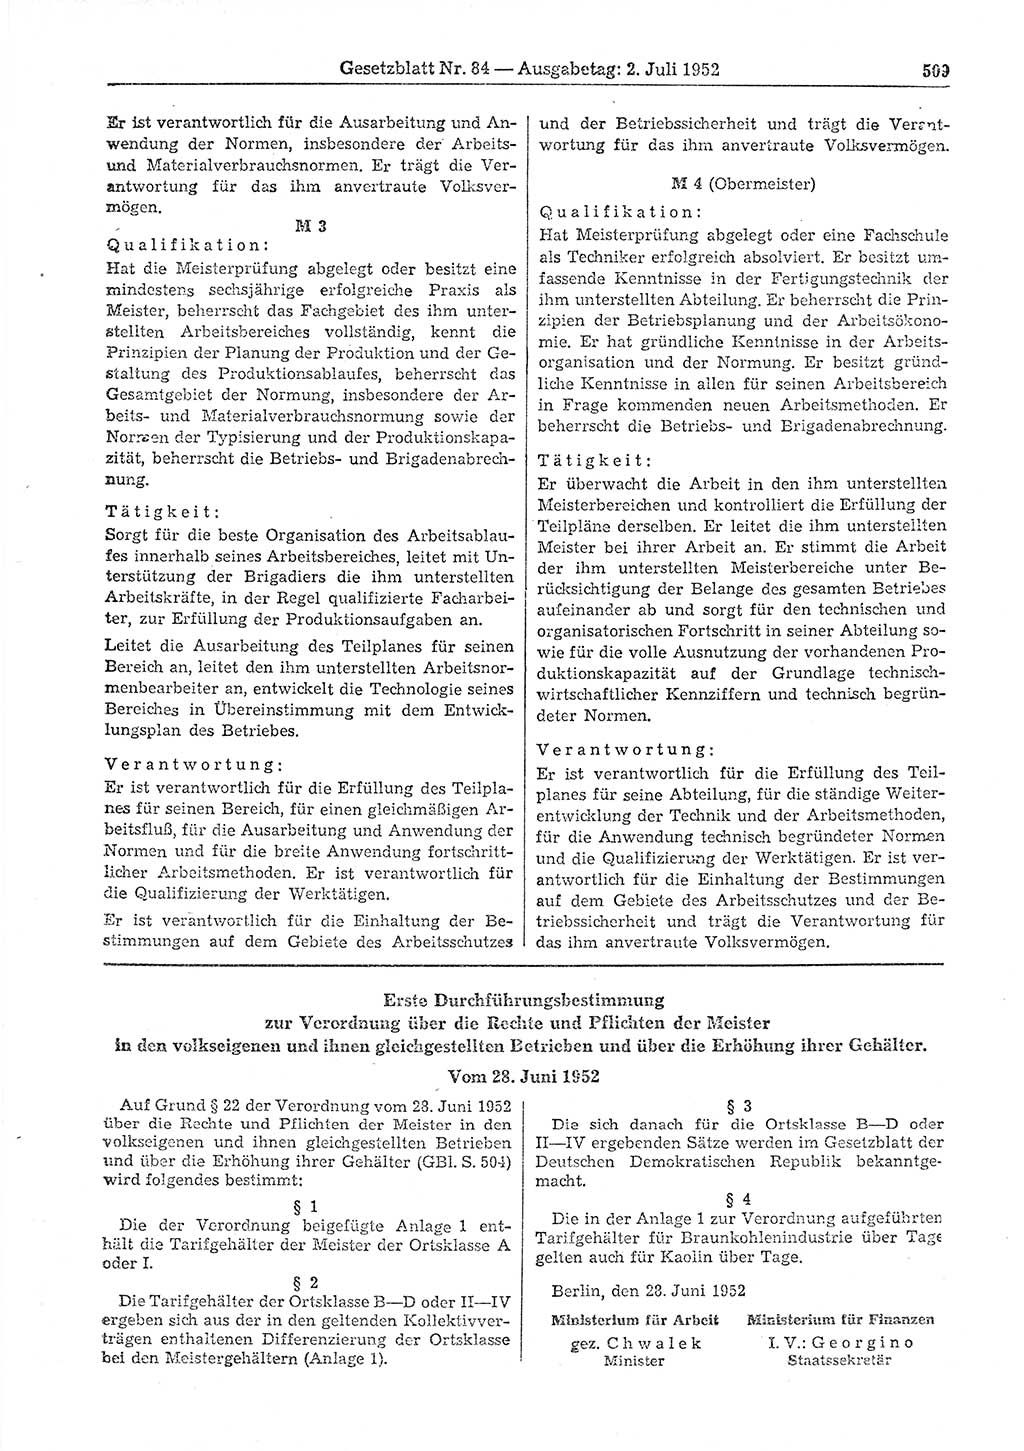 Gesetzblatt (GBl.) der Deutschen Demokratischen Republik (DDR) 1952, Seite 509 (GBl. DDR 1952, S. 509)